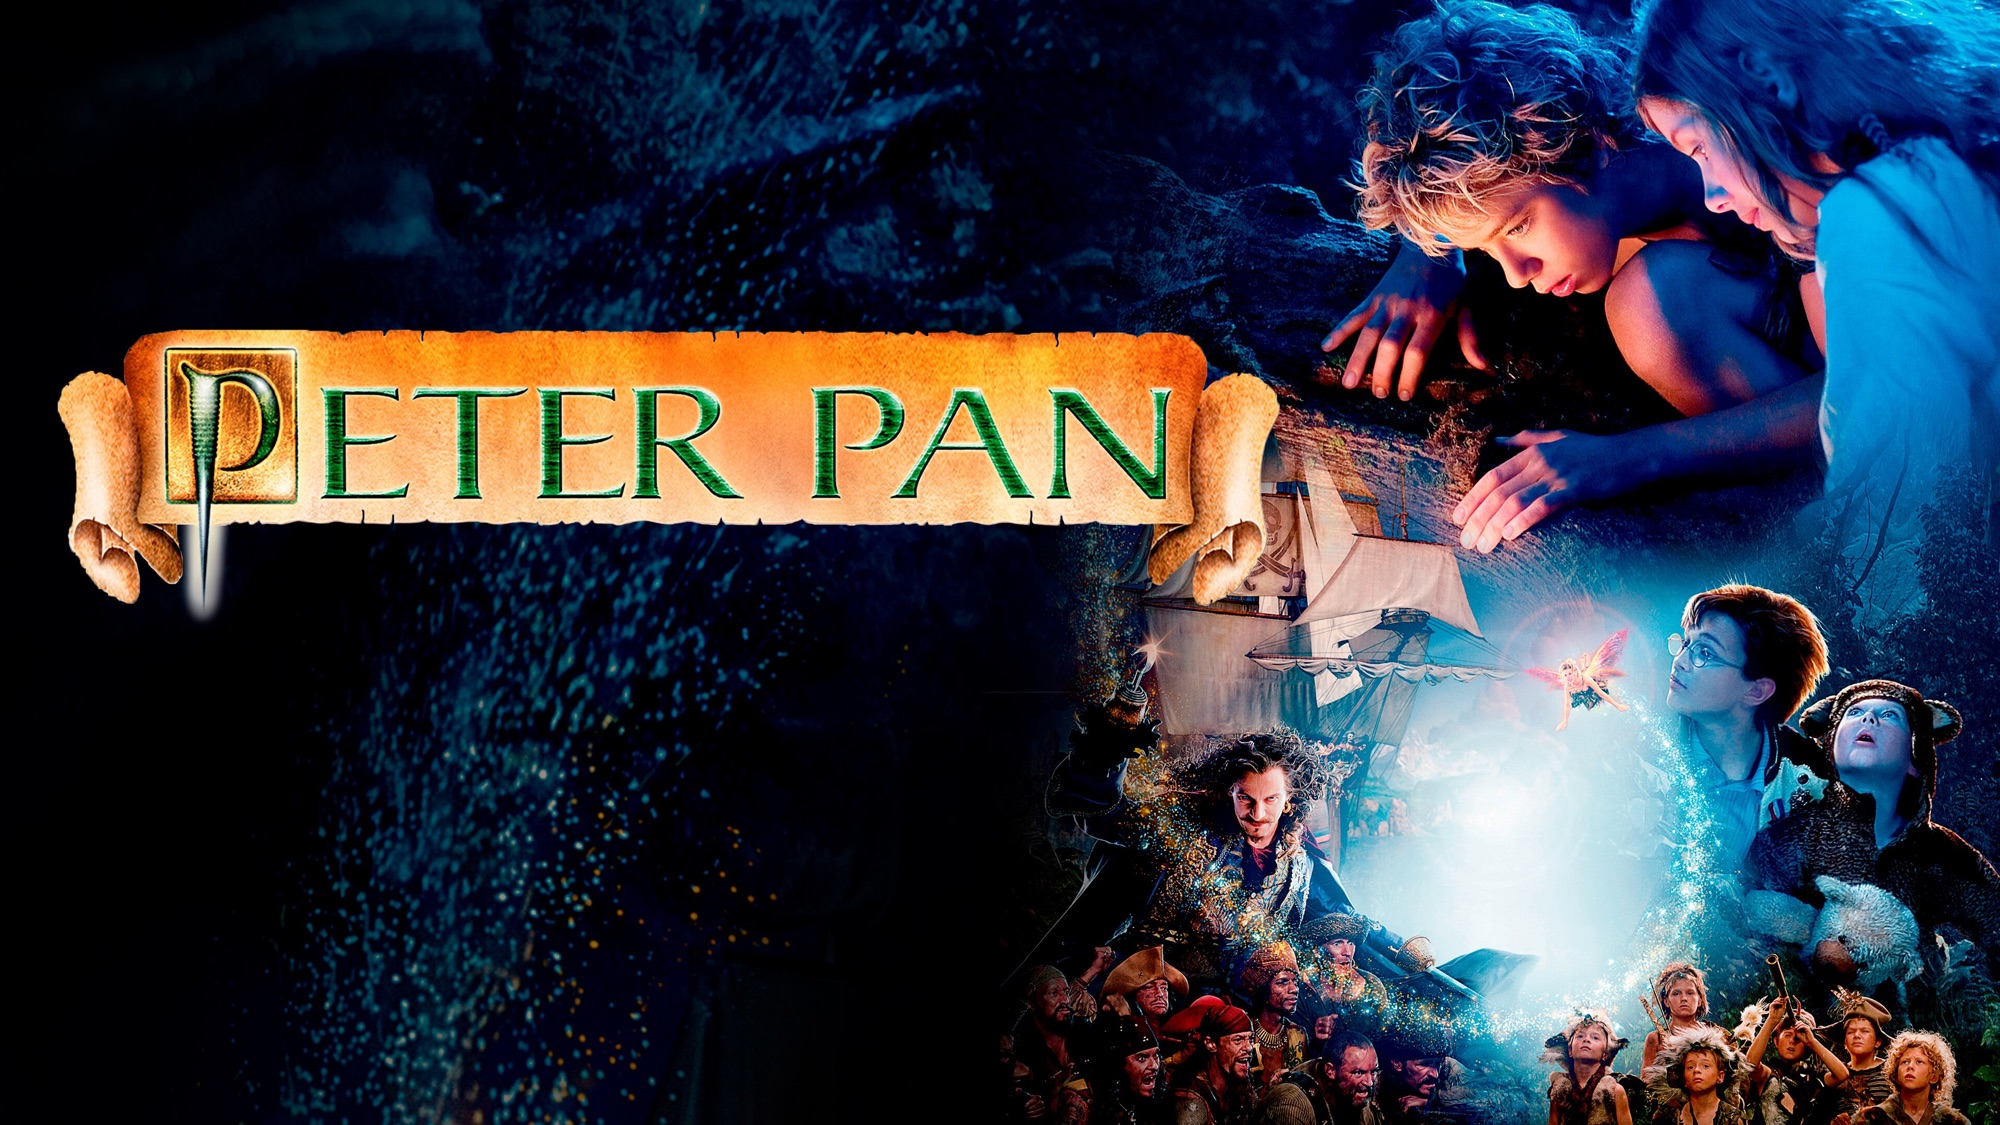 Melhores papéis de parede de Peter Pan (2003) para tela do telefone